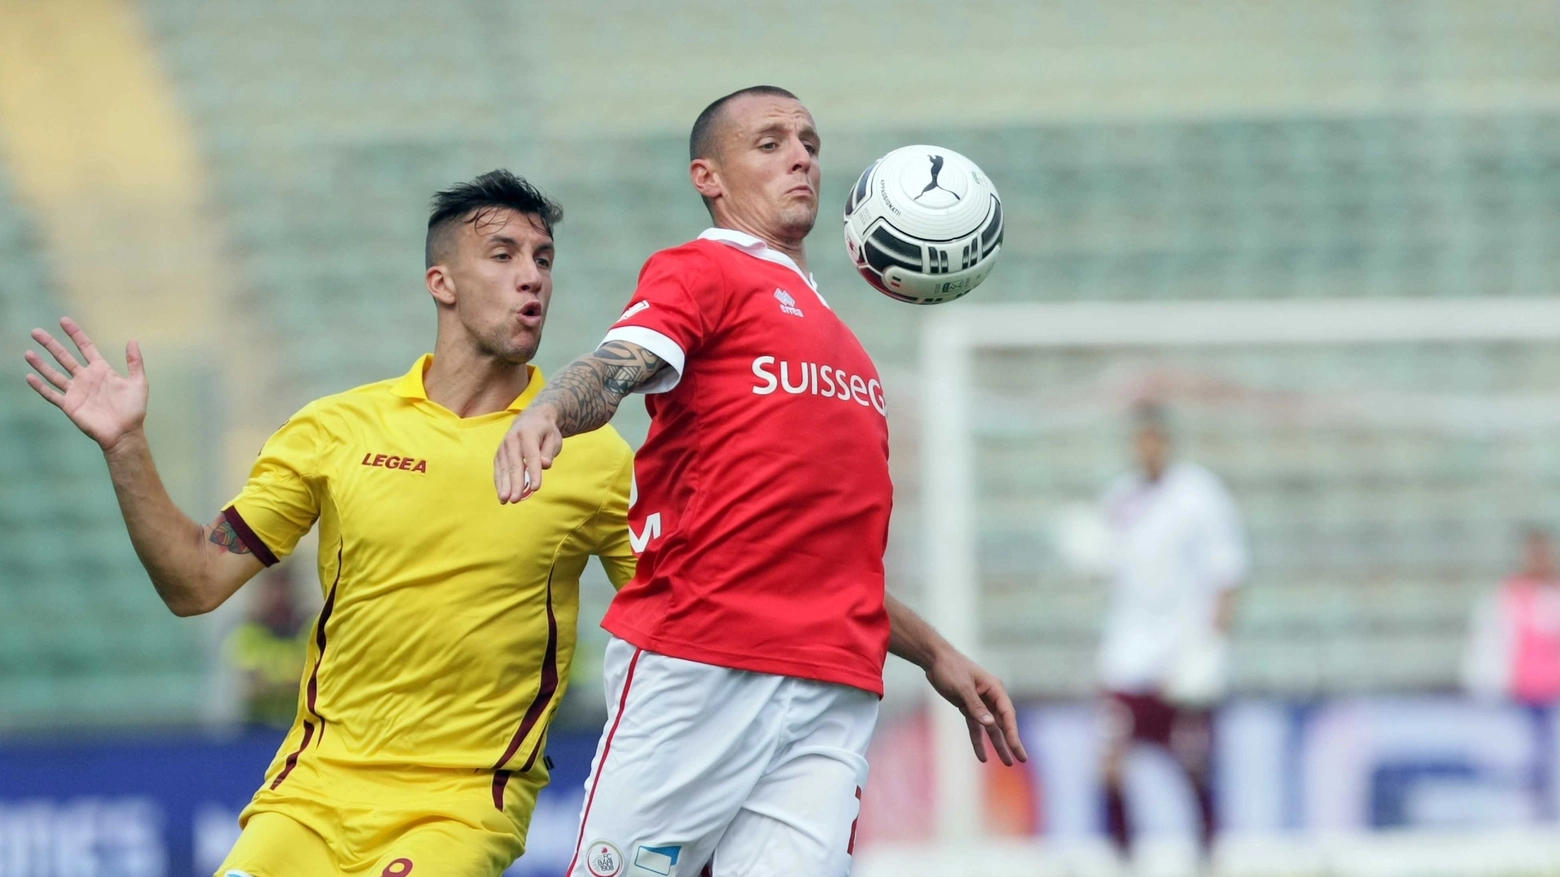 Un azione di gioco durante Bari-Livorno (Lapresse)